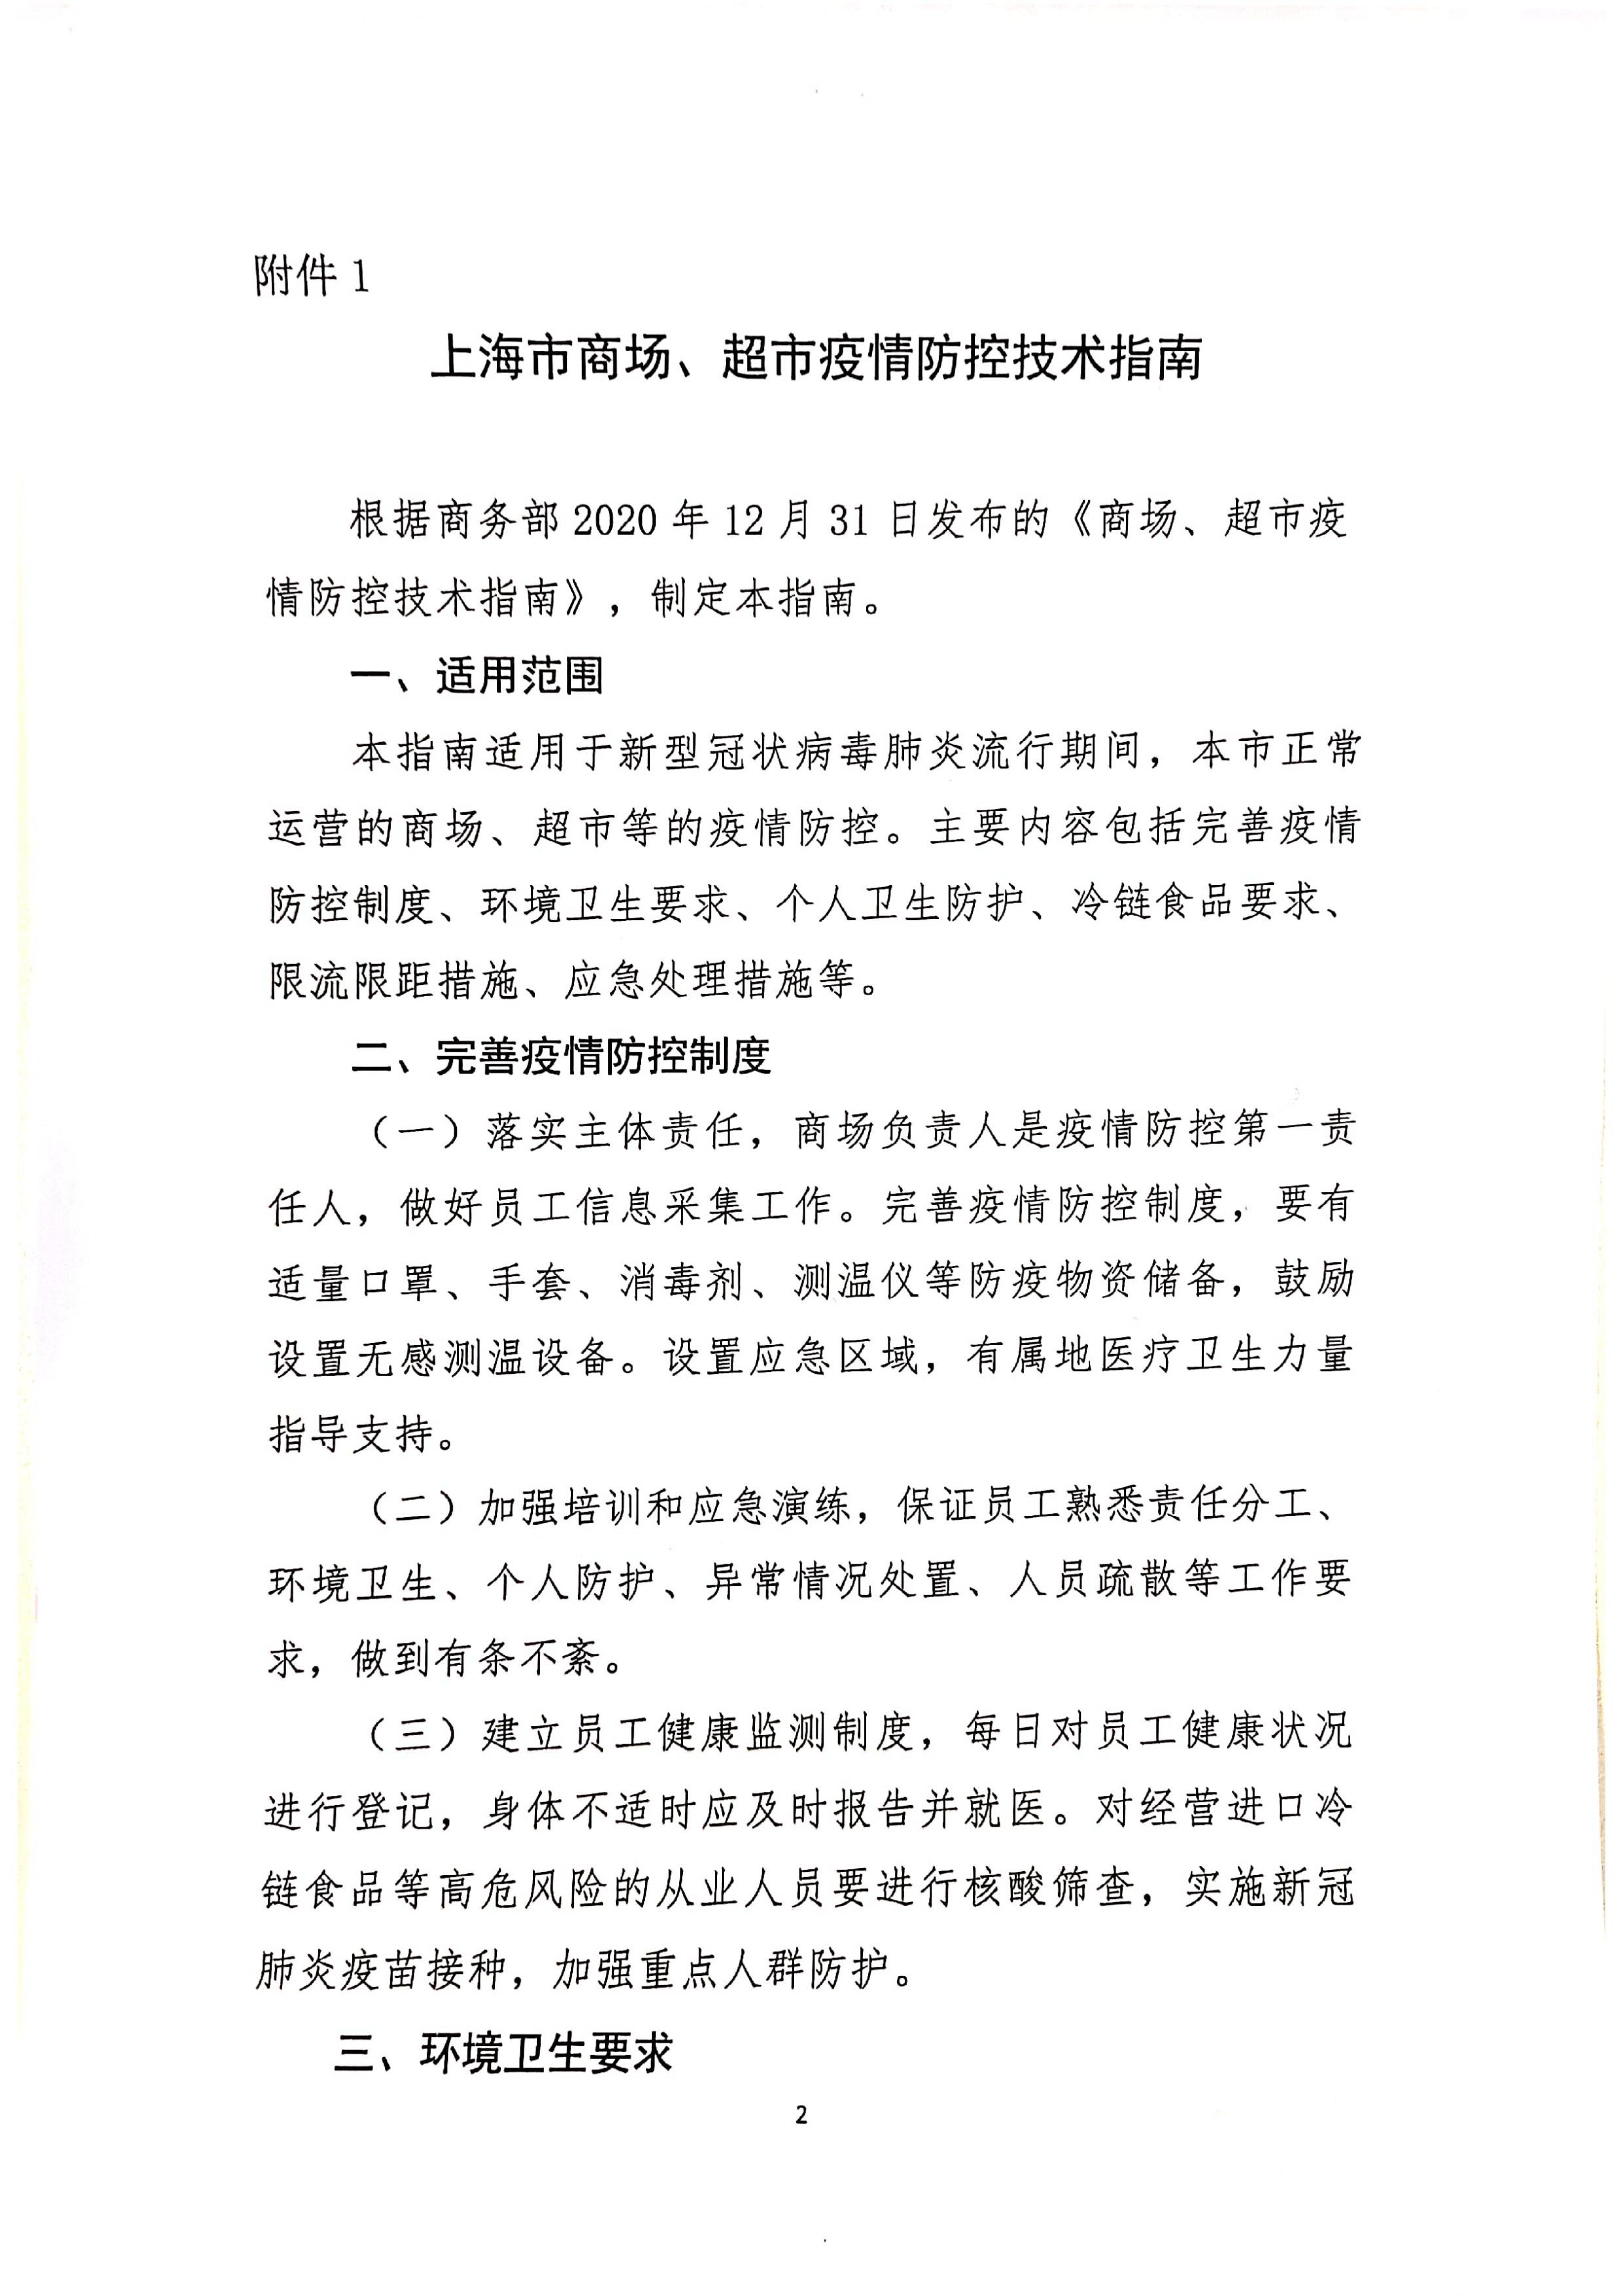 发文4号-关于印发《上海市商场、超市疫情防控技术指南》等4个指南的通知_02.jpg